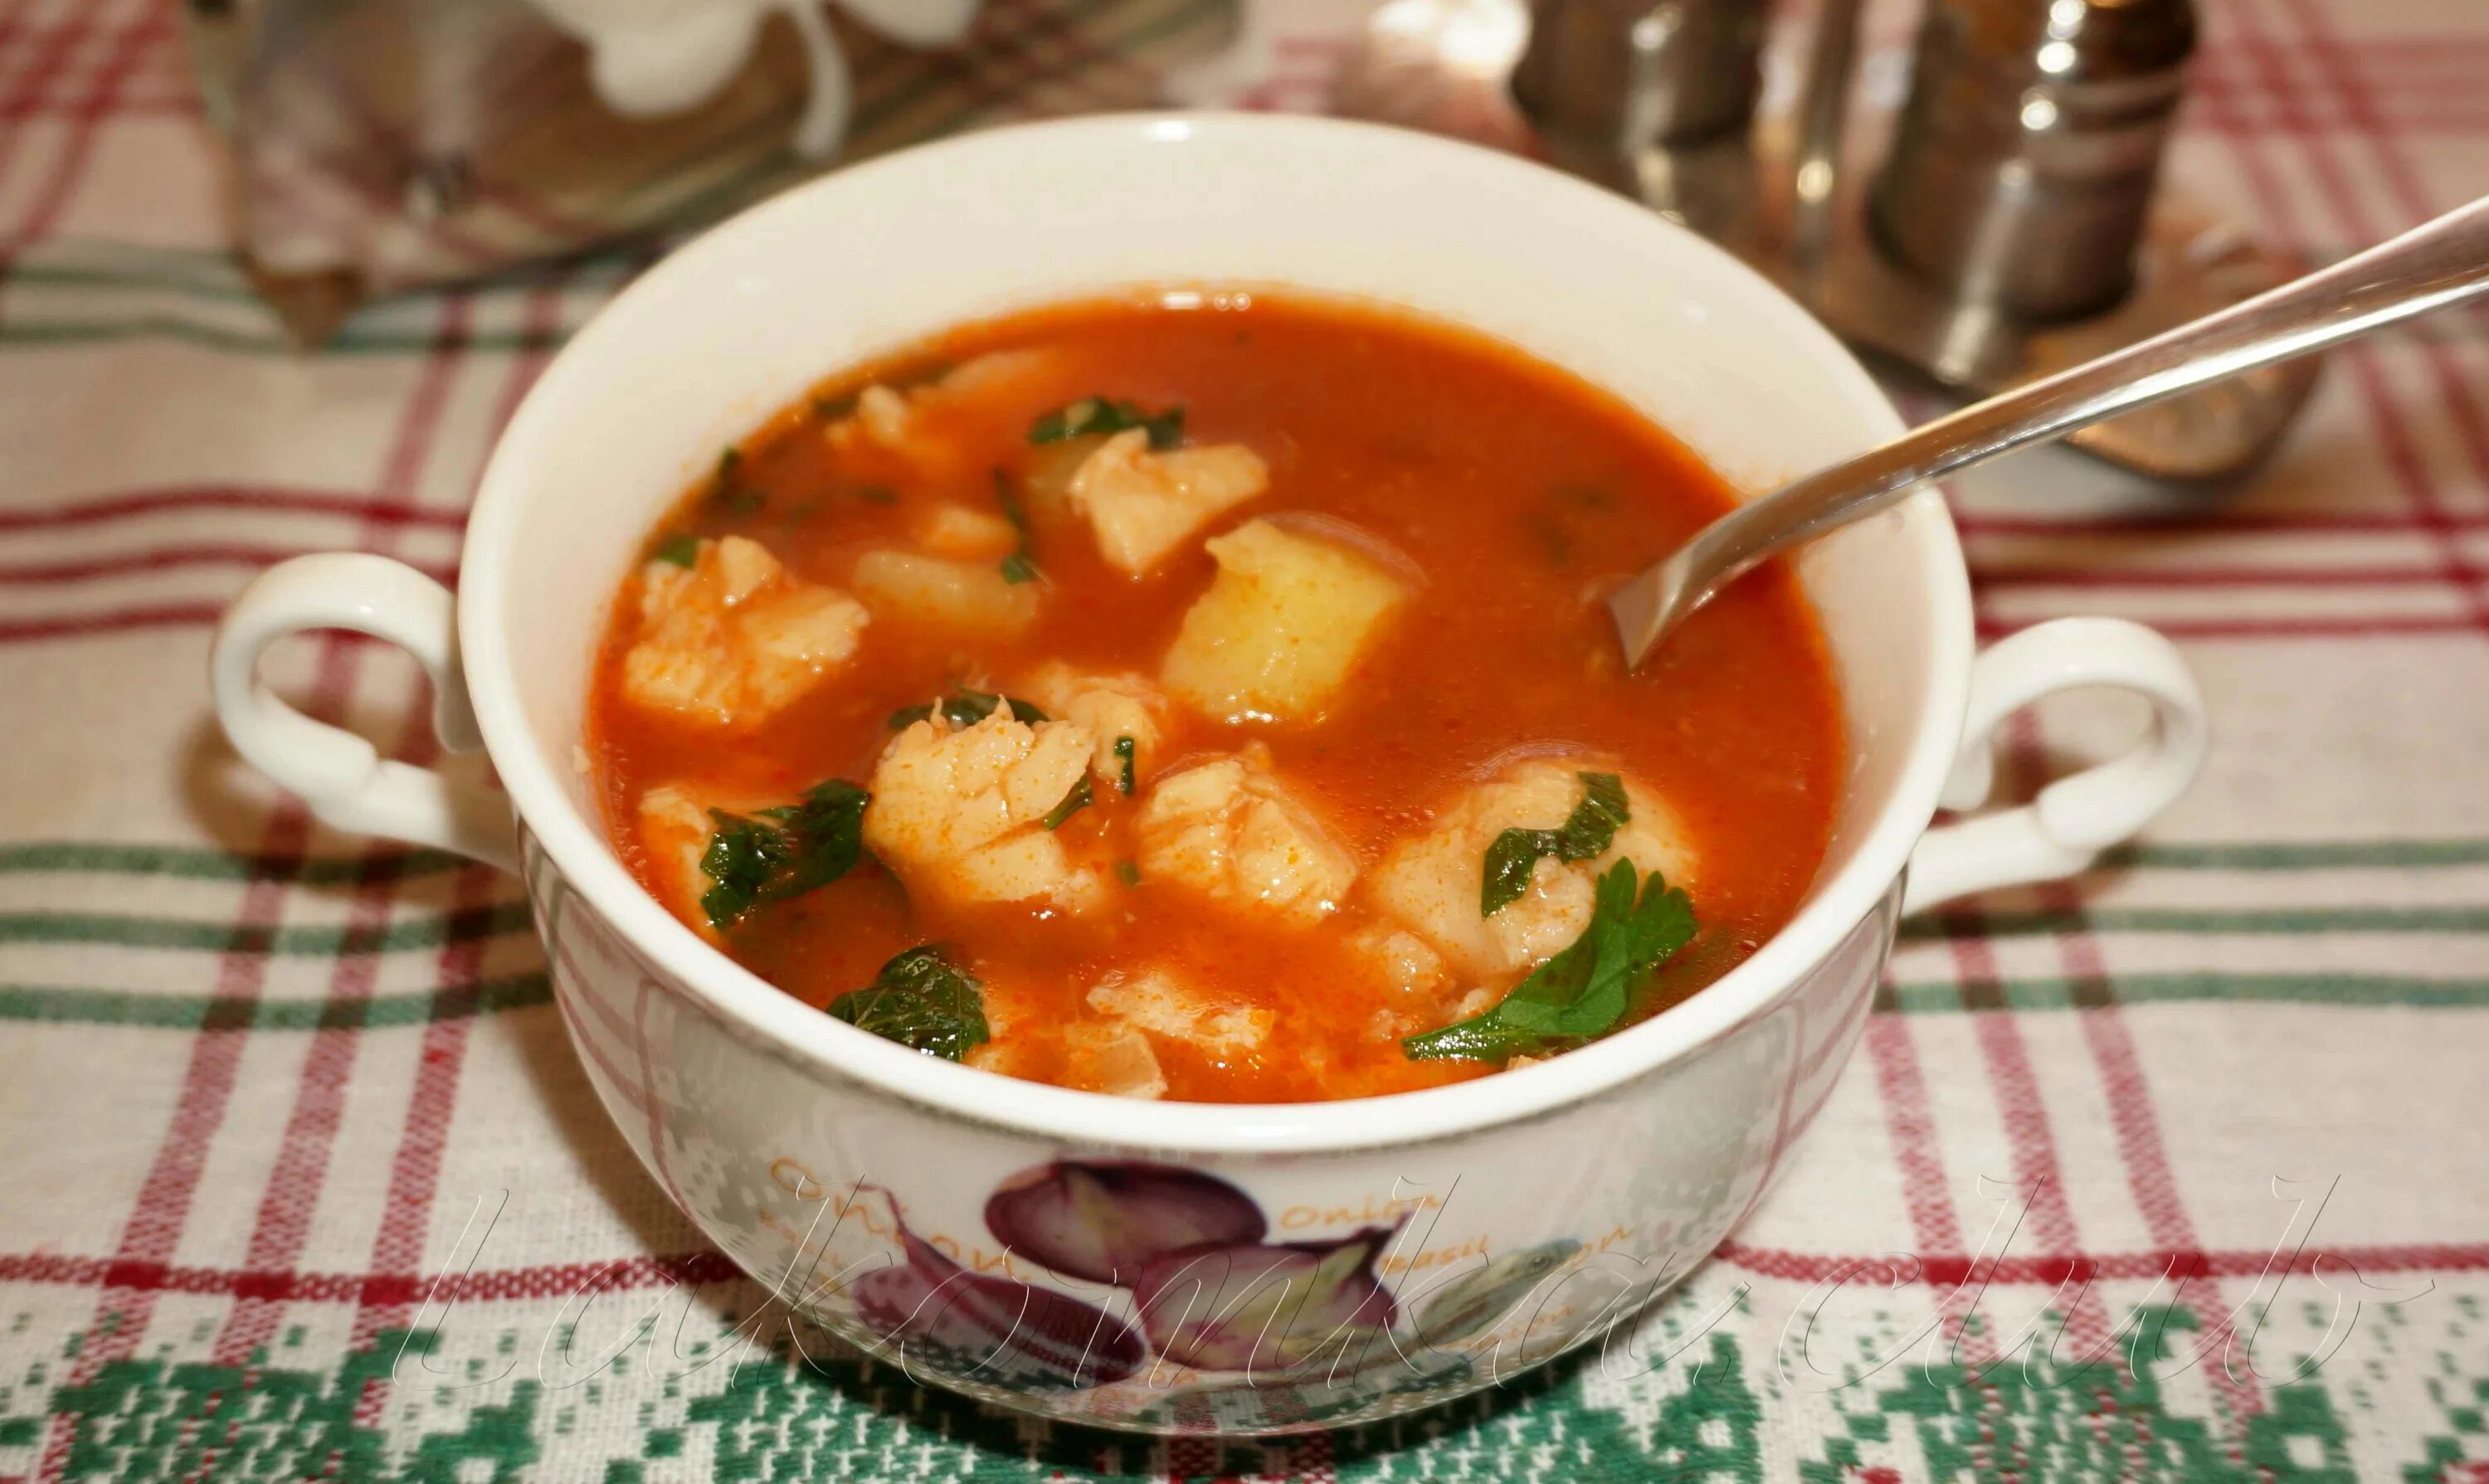 Рыбный суп из томатной консервы. Суп с килькой. Томатный суп с рыбой. Окрошка с килькой в томатном соусе. Рыбный суп из консервов с рыбой в томатном соусе.